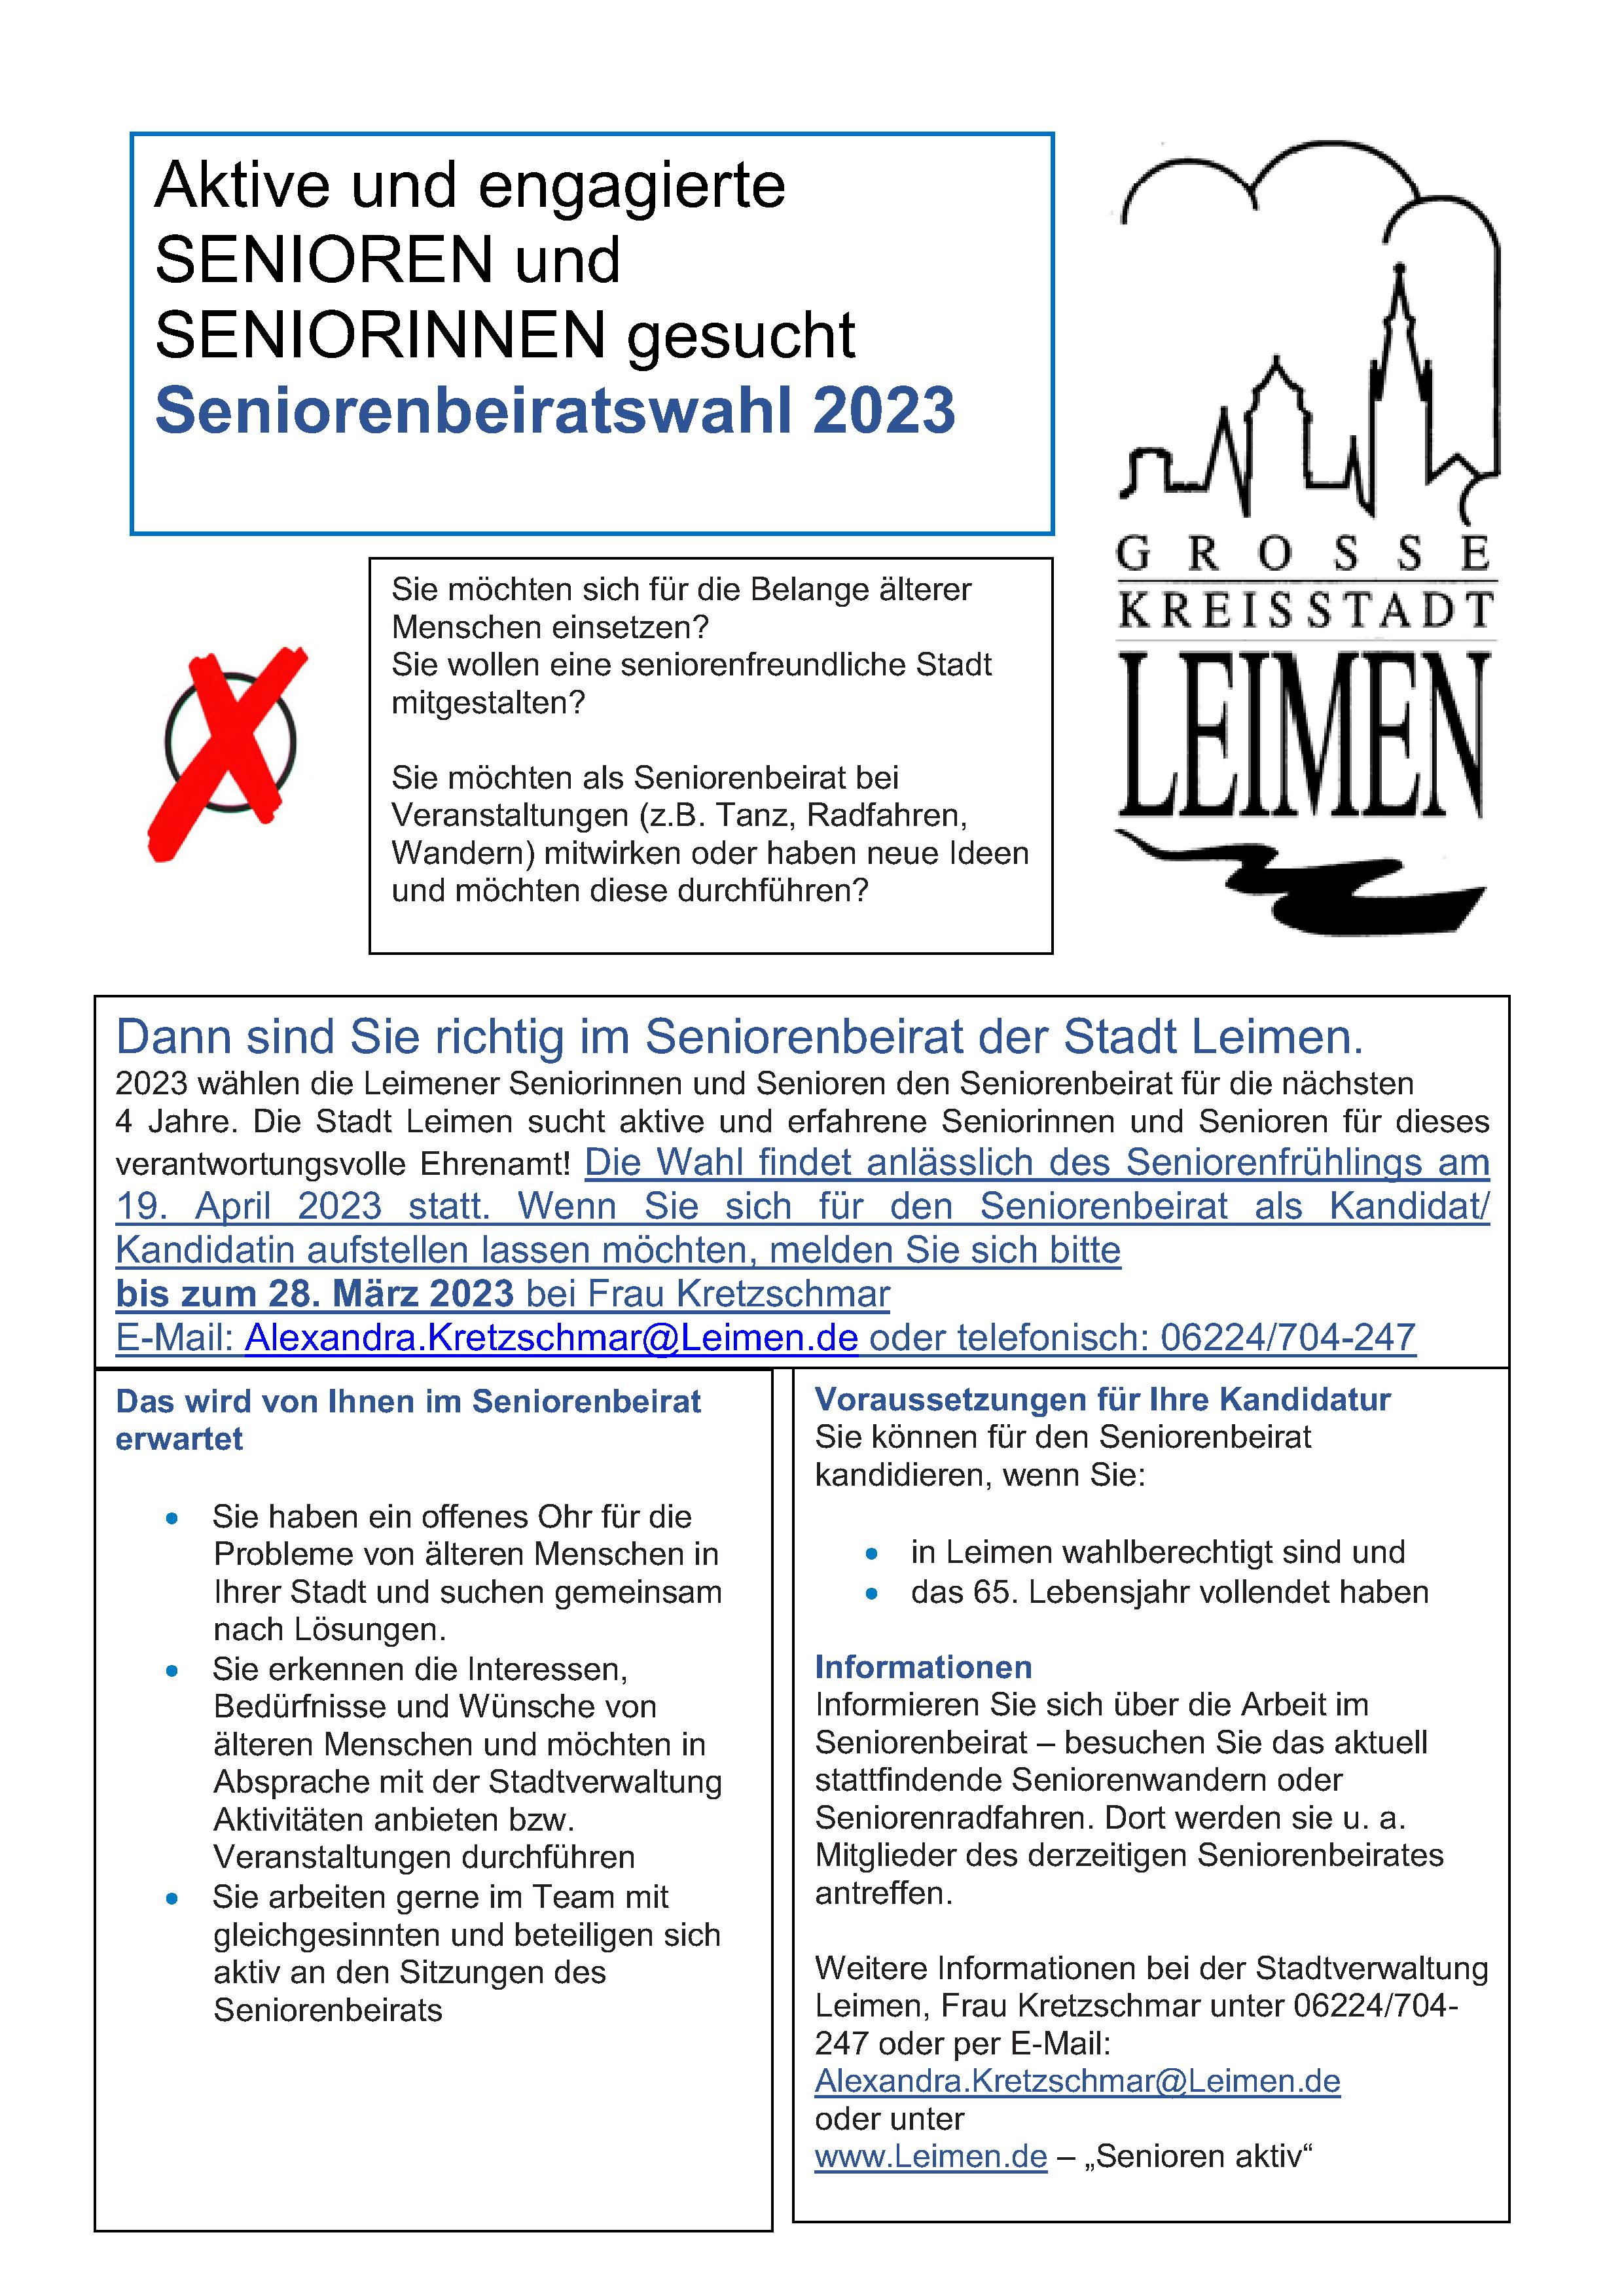  Seniorenbeiratswahl 2023 